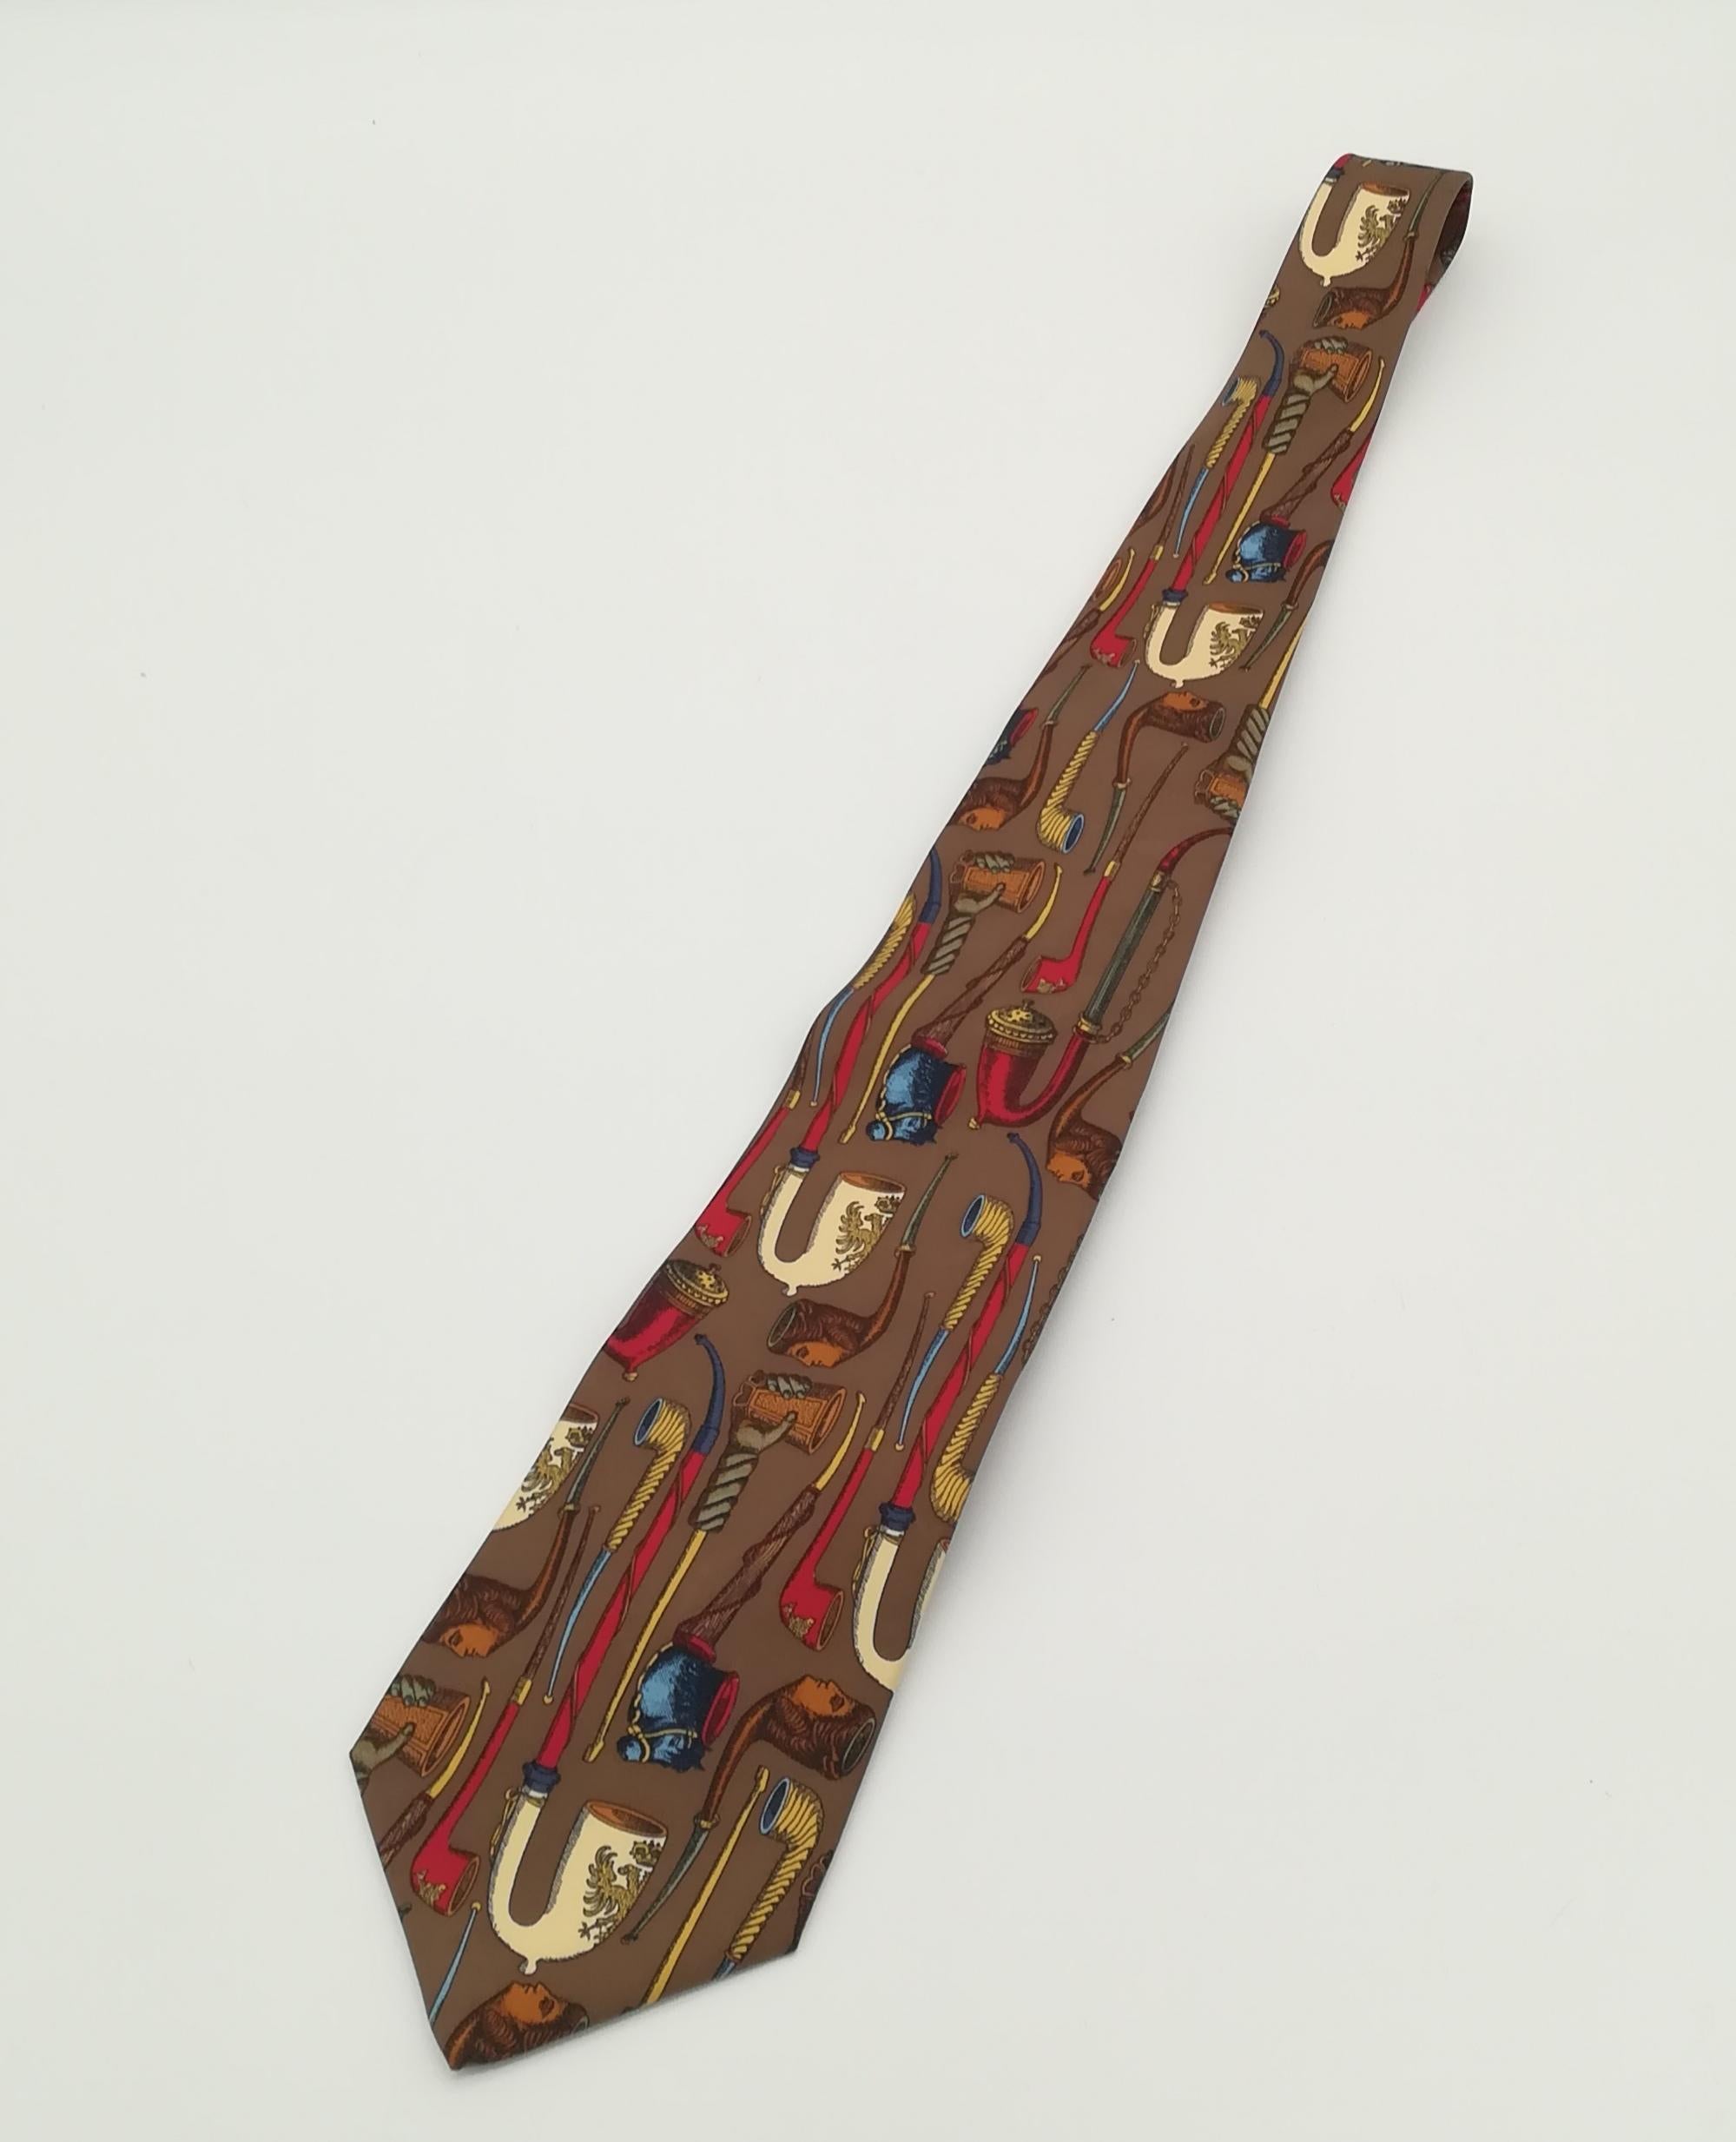 Diese Krawatte, die in den 1970er Jahren von dem bekannten italienischen Künstler Piero Fornasetti entworfen wurde und derzeit nicht mehr hergestellt wird, zeigt ein originelles und stilvolles Pfeifenmuster. Es ist hervorragend erhalten, präsentiert